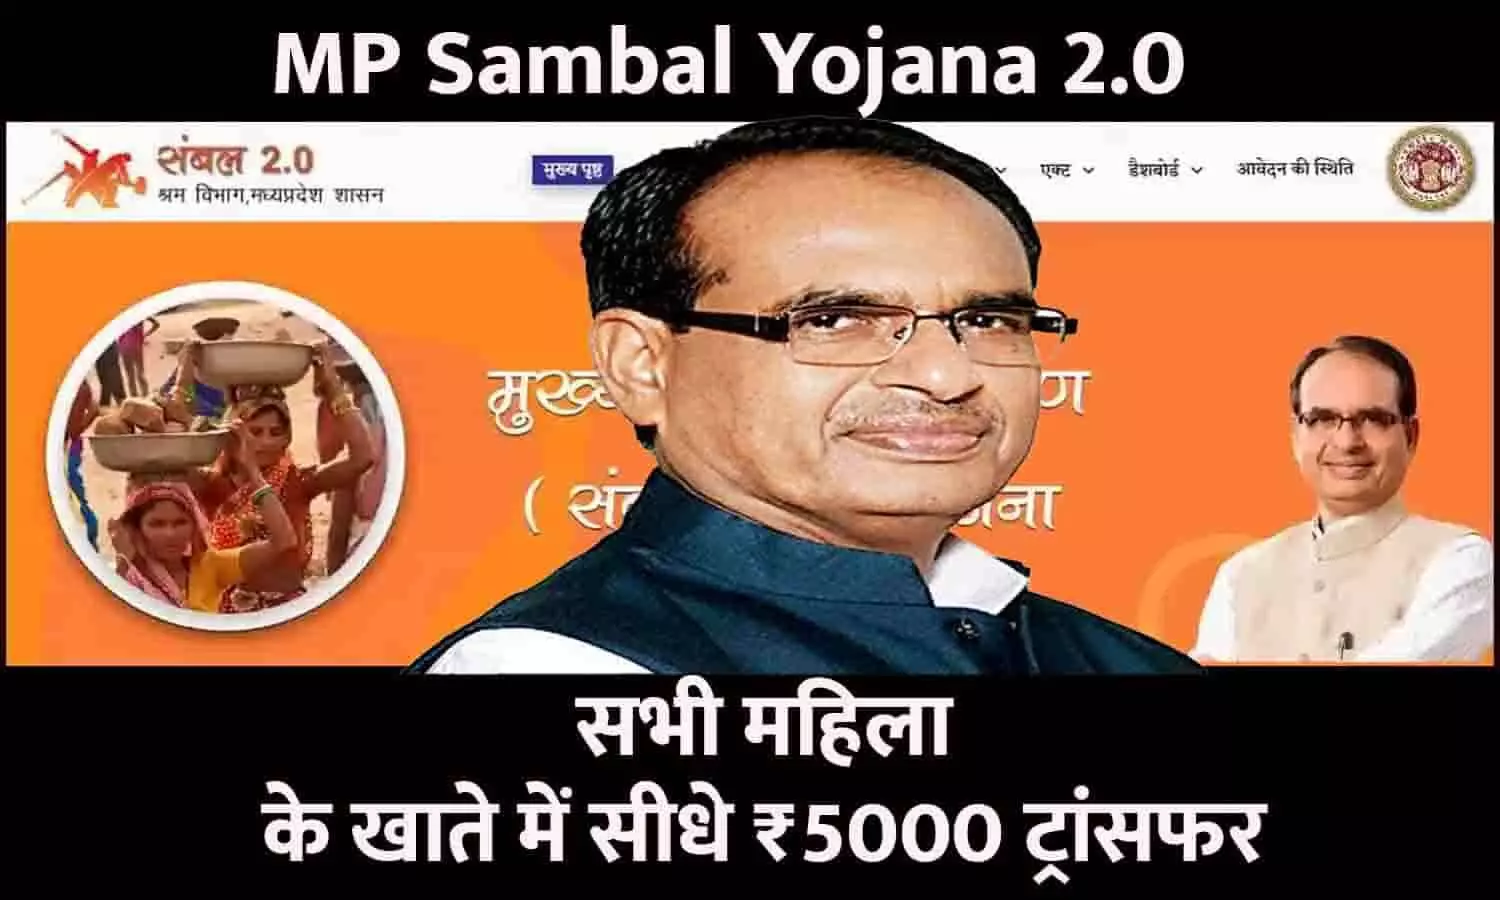 Sambal Yojana 2.0 In MP 2023: बड़ा ऐलान! सभी महिला के खाते में सीधे ₹5000 ट्रांसफर, जाने